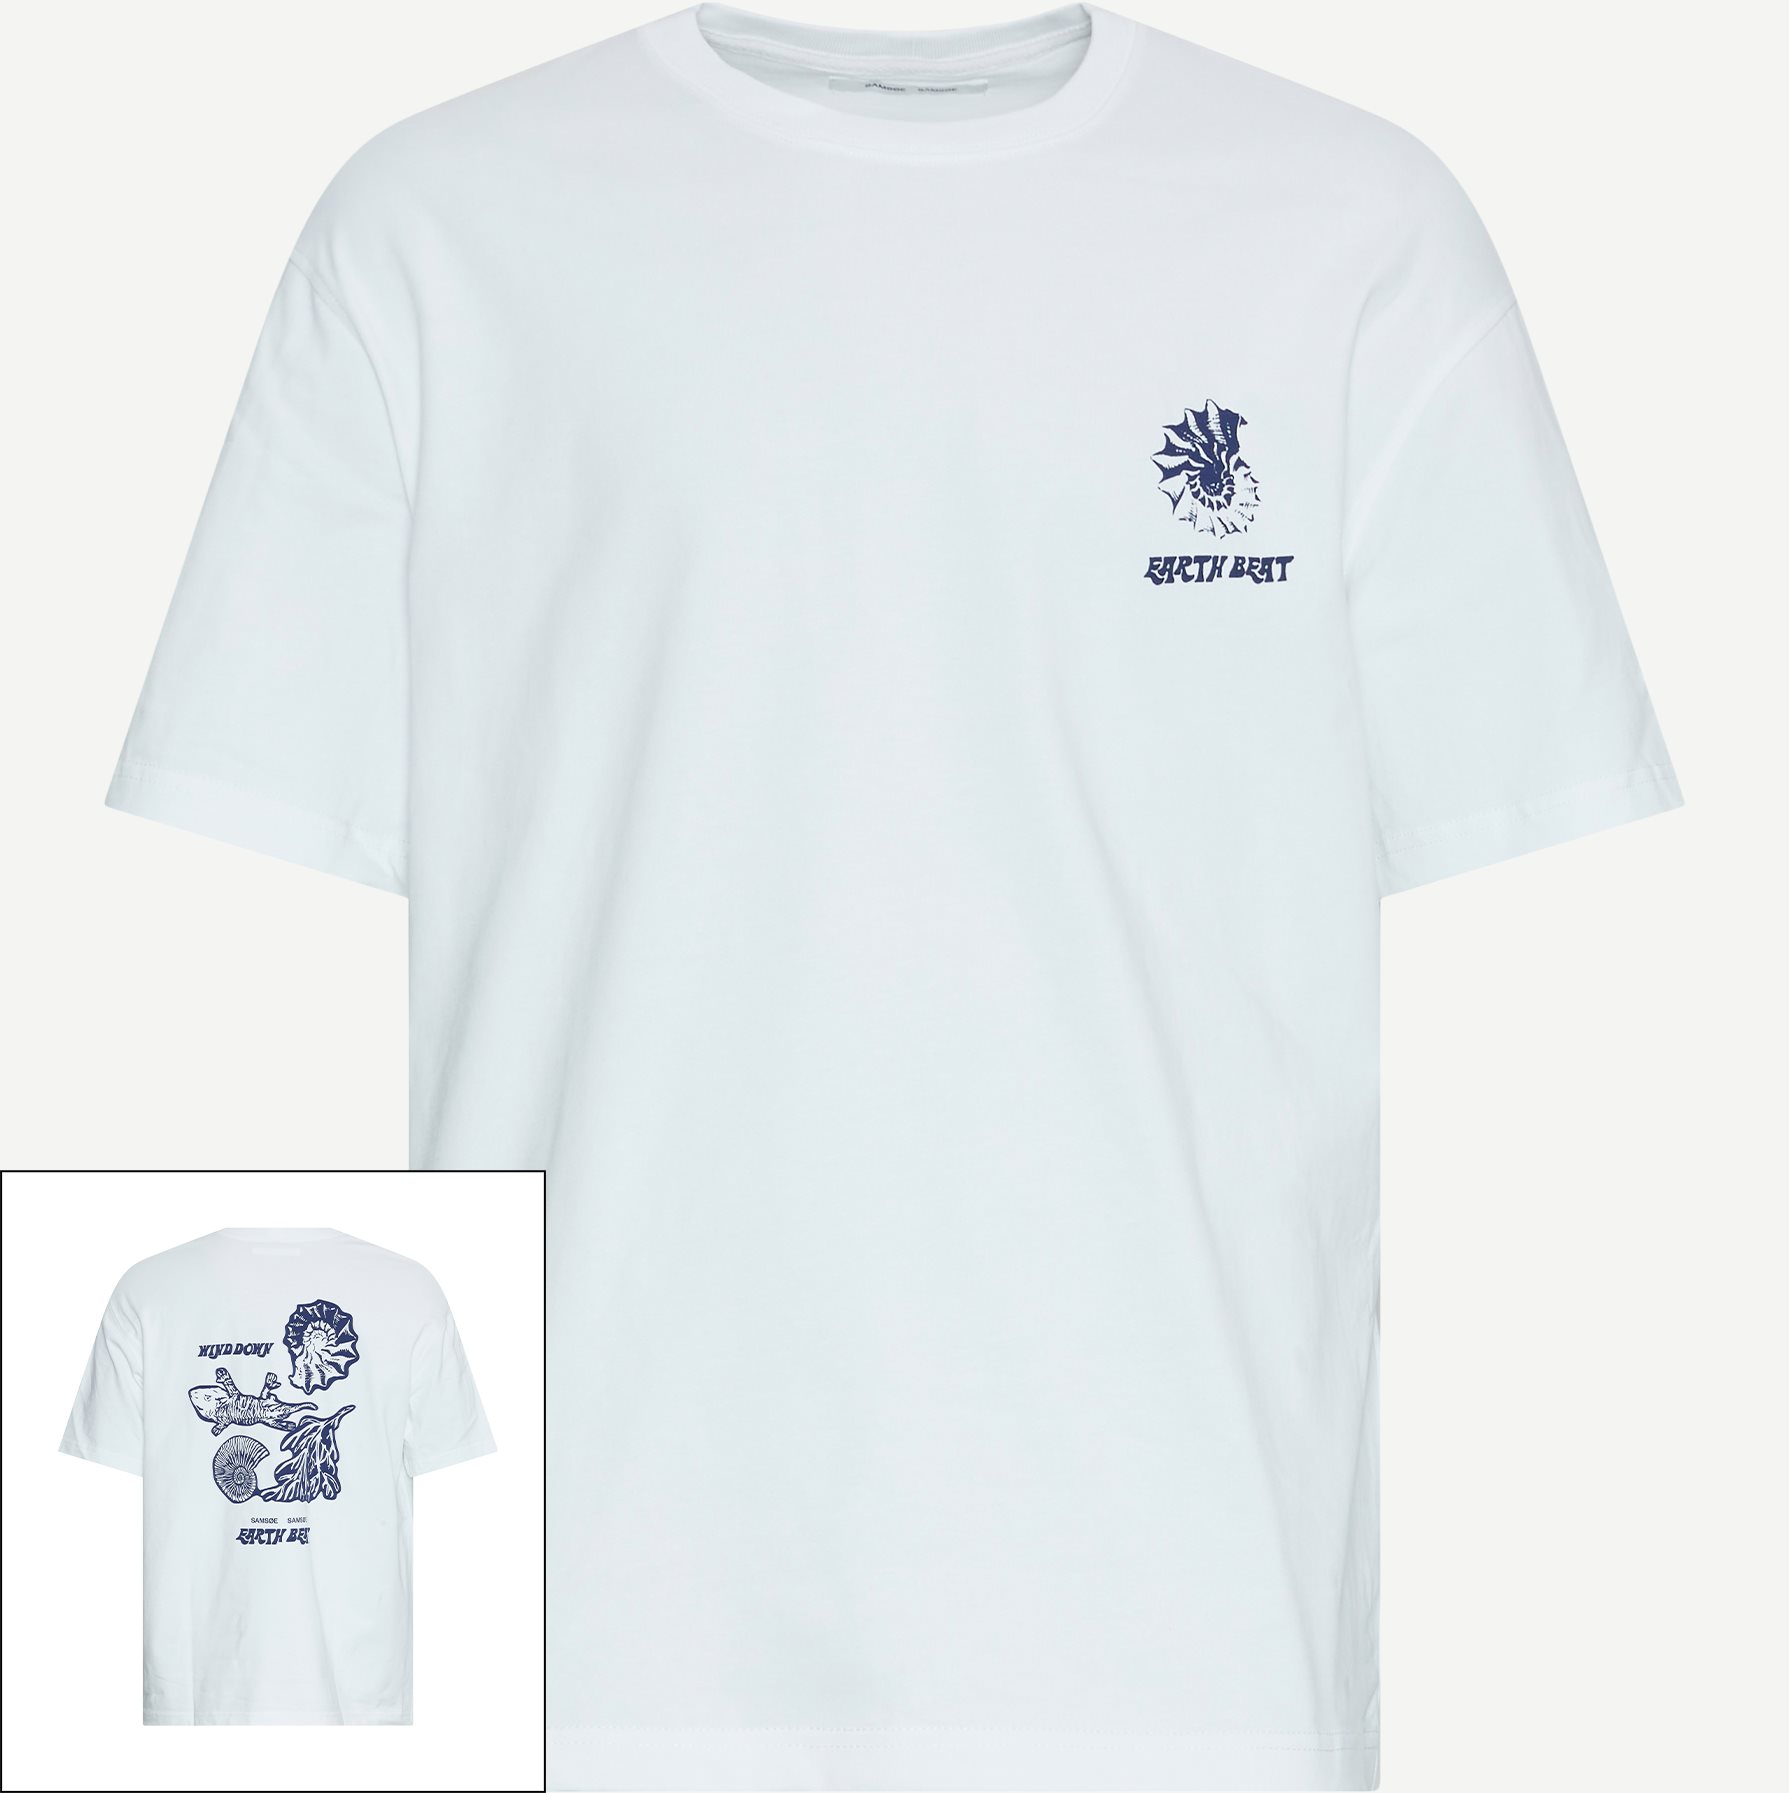 Samsøe Samsøe T-shirts SAWIND UNI FOSSIL T-SHIRT 11725 Hvid